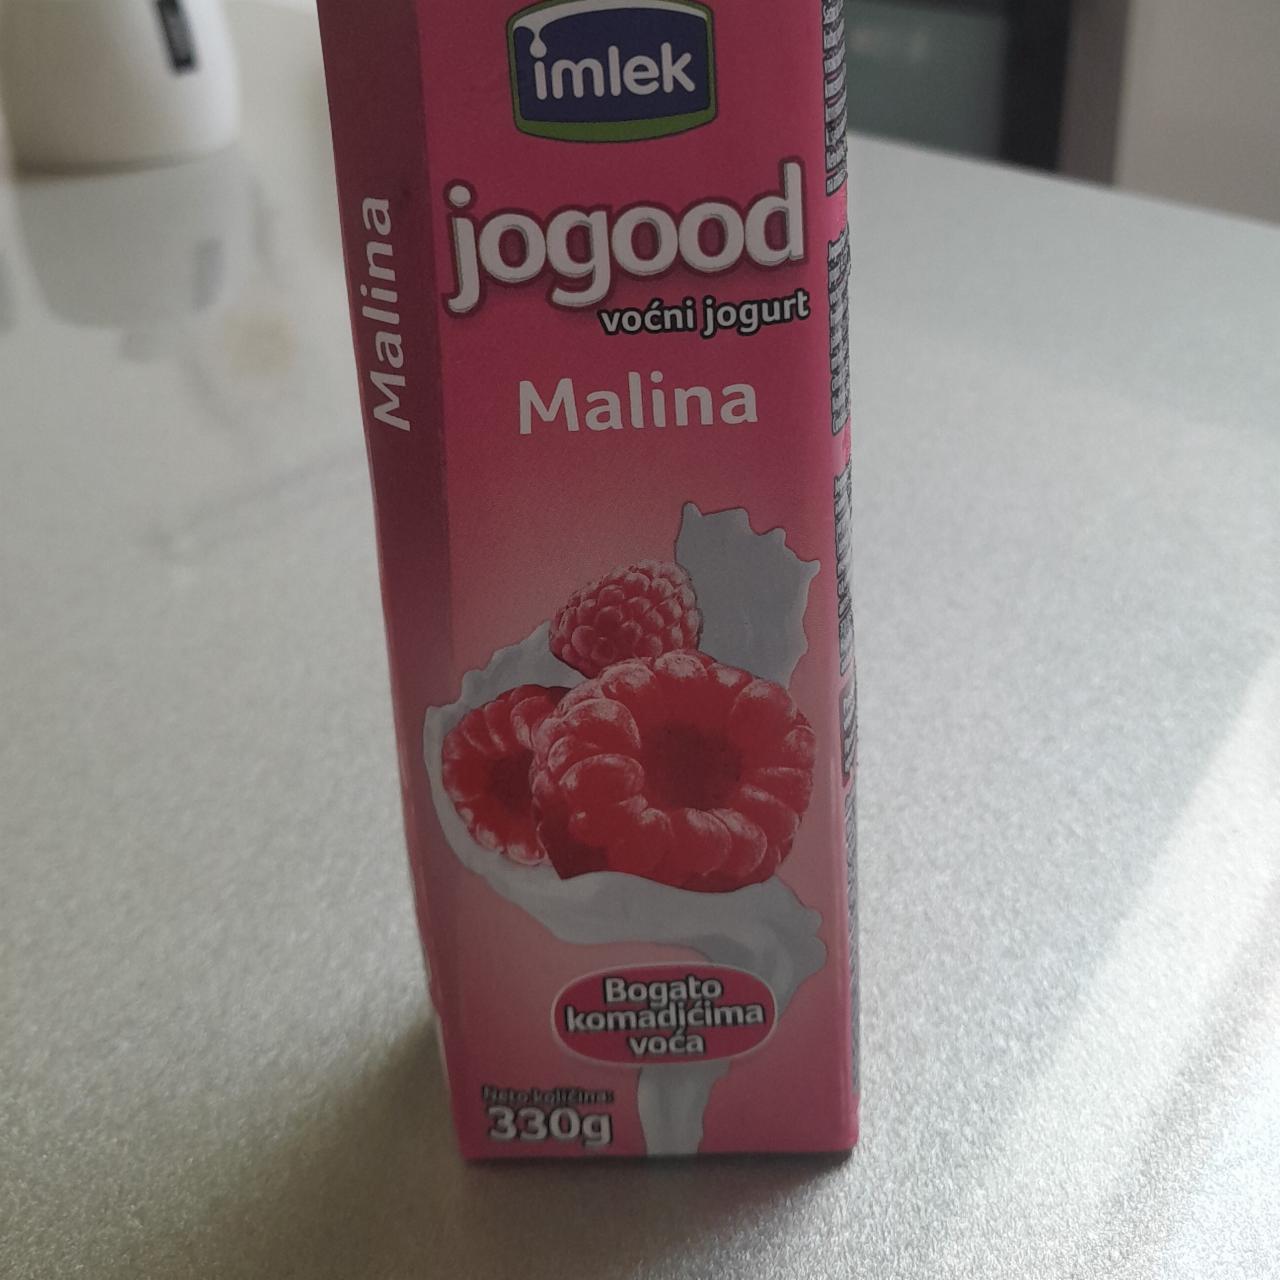 Фото - jogood малина питьевой йогурт imelk